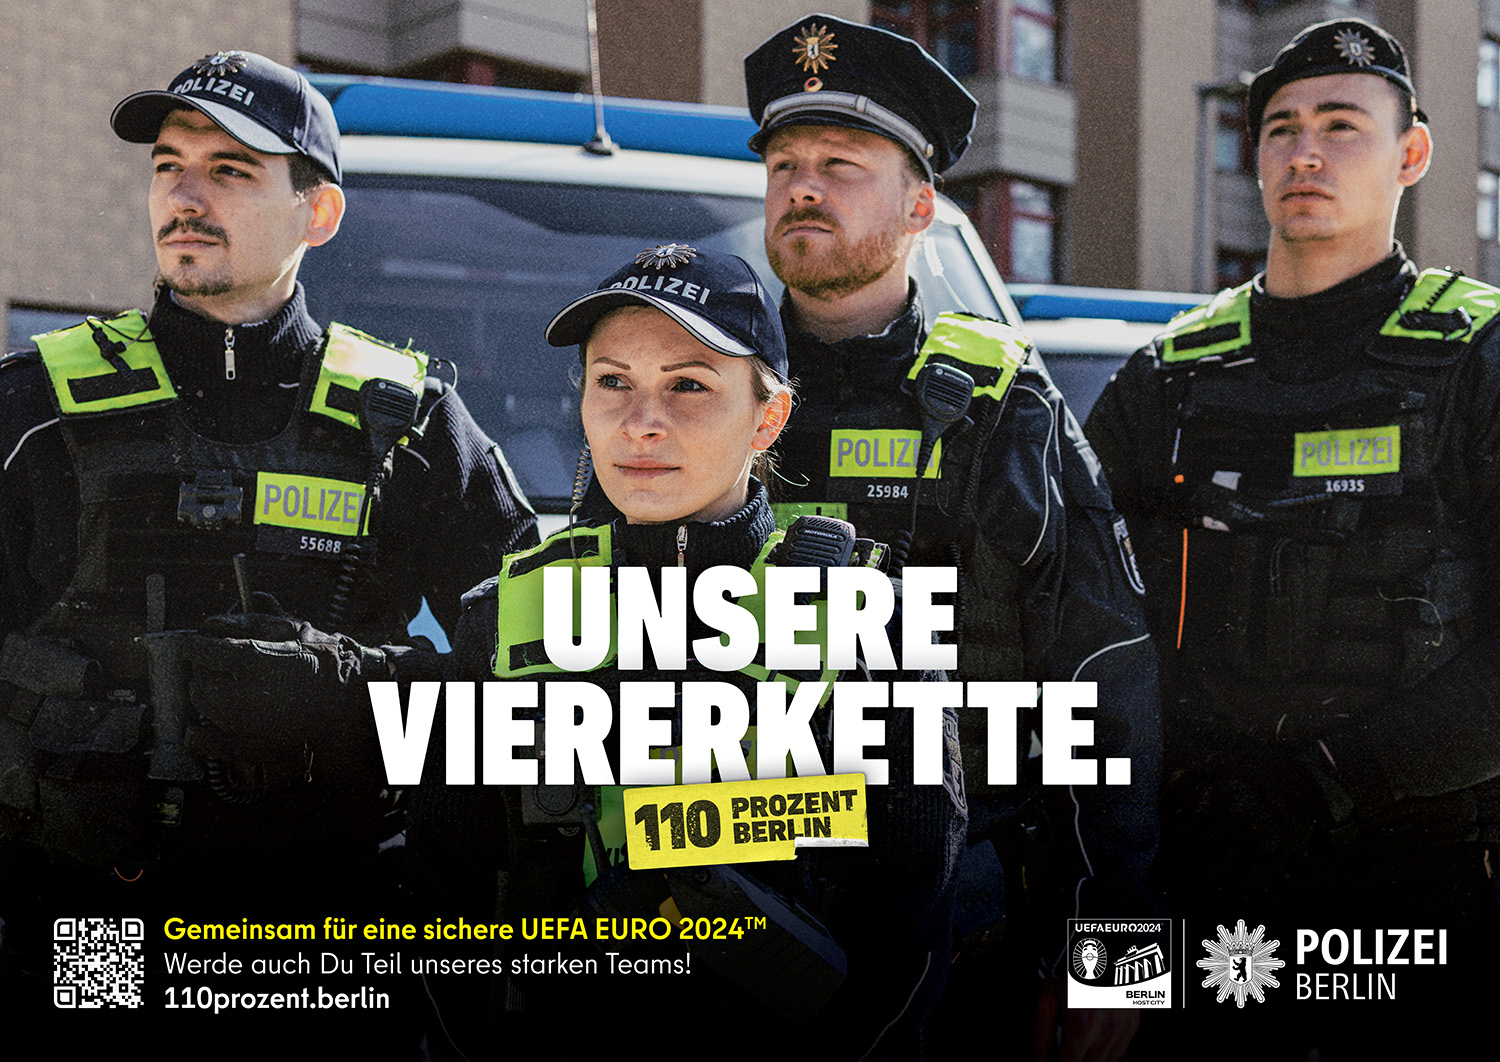 Polizei Berlin - Unsere Viererkette